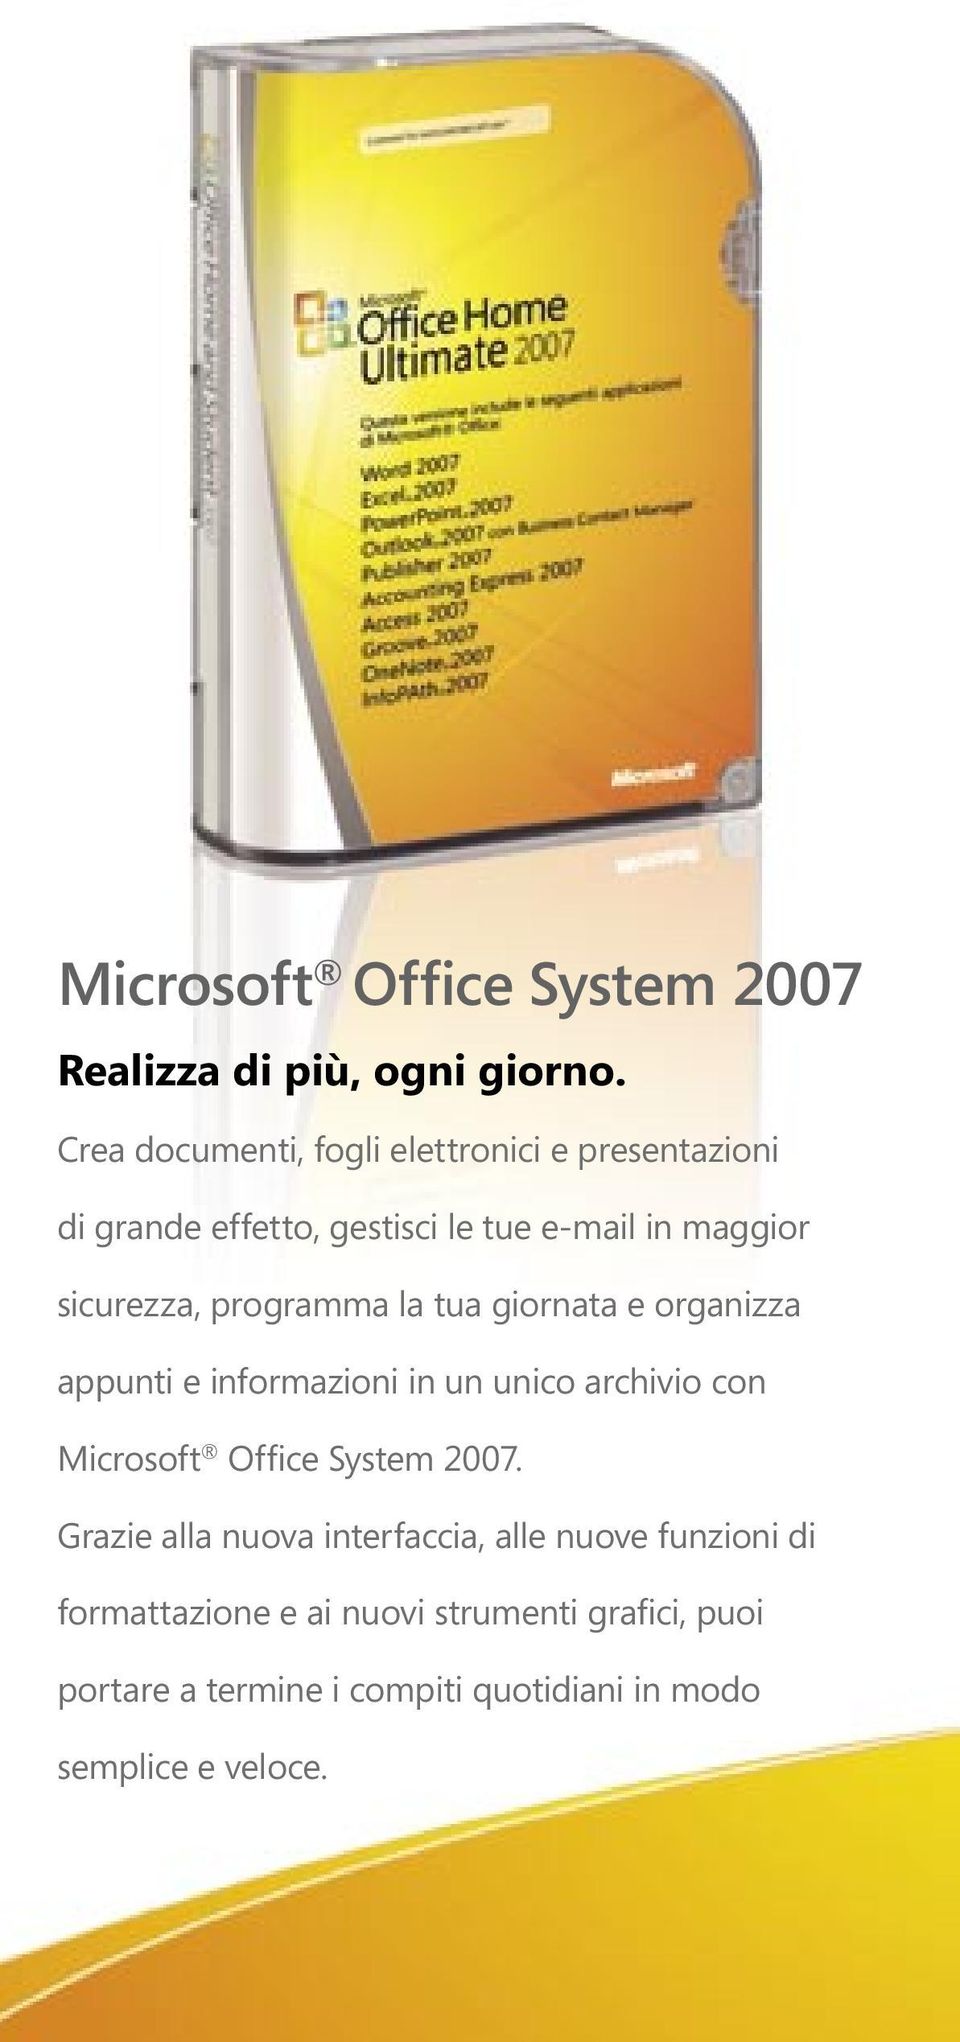 programma la tua giornata e organizza appunti e informazioni in un unico archivio con Microsoft Office System 2007.